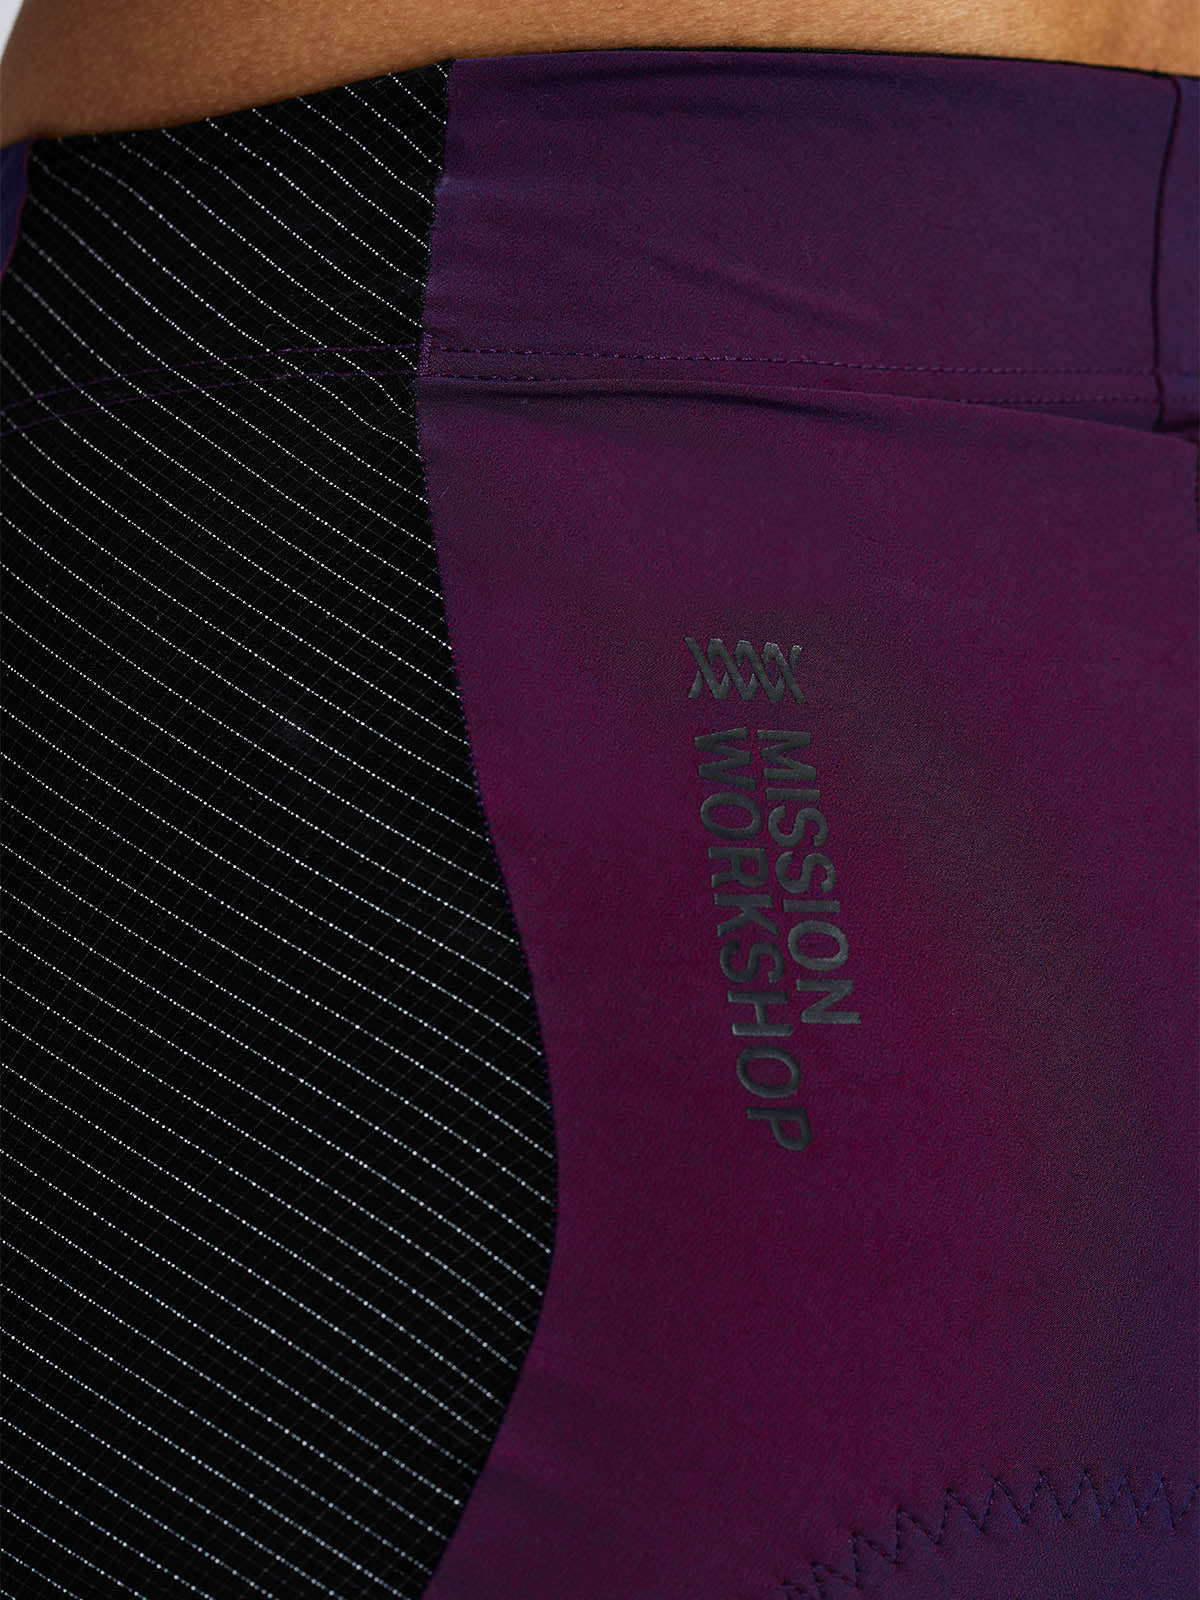 Mission Pro Short Women's från Mission Workshop - Väskor och tekniska kläder för vädertätning - San Francisco och Los Angeles - Byggda för att tåla - Garanterade för alltid